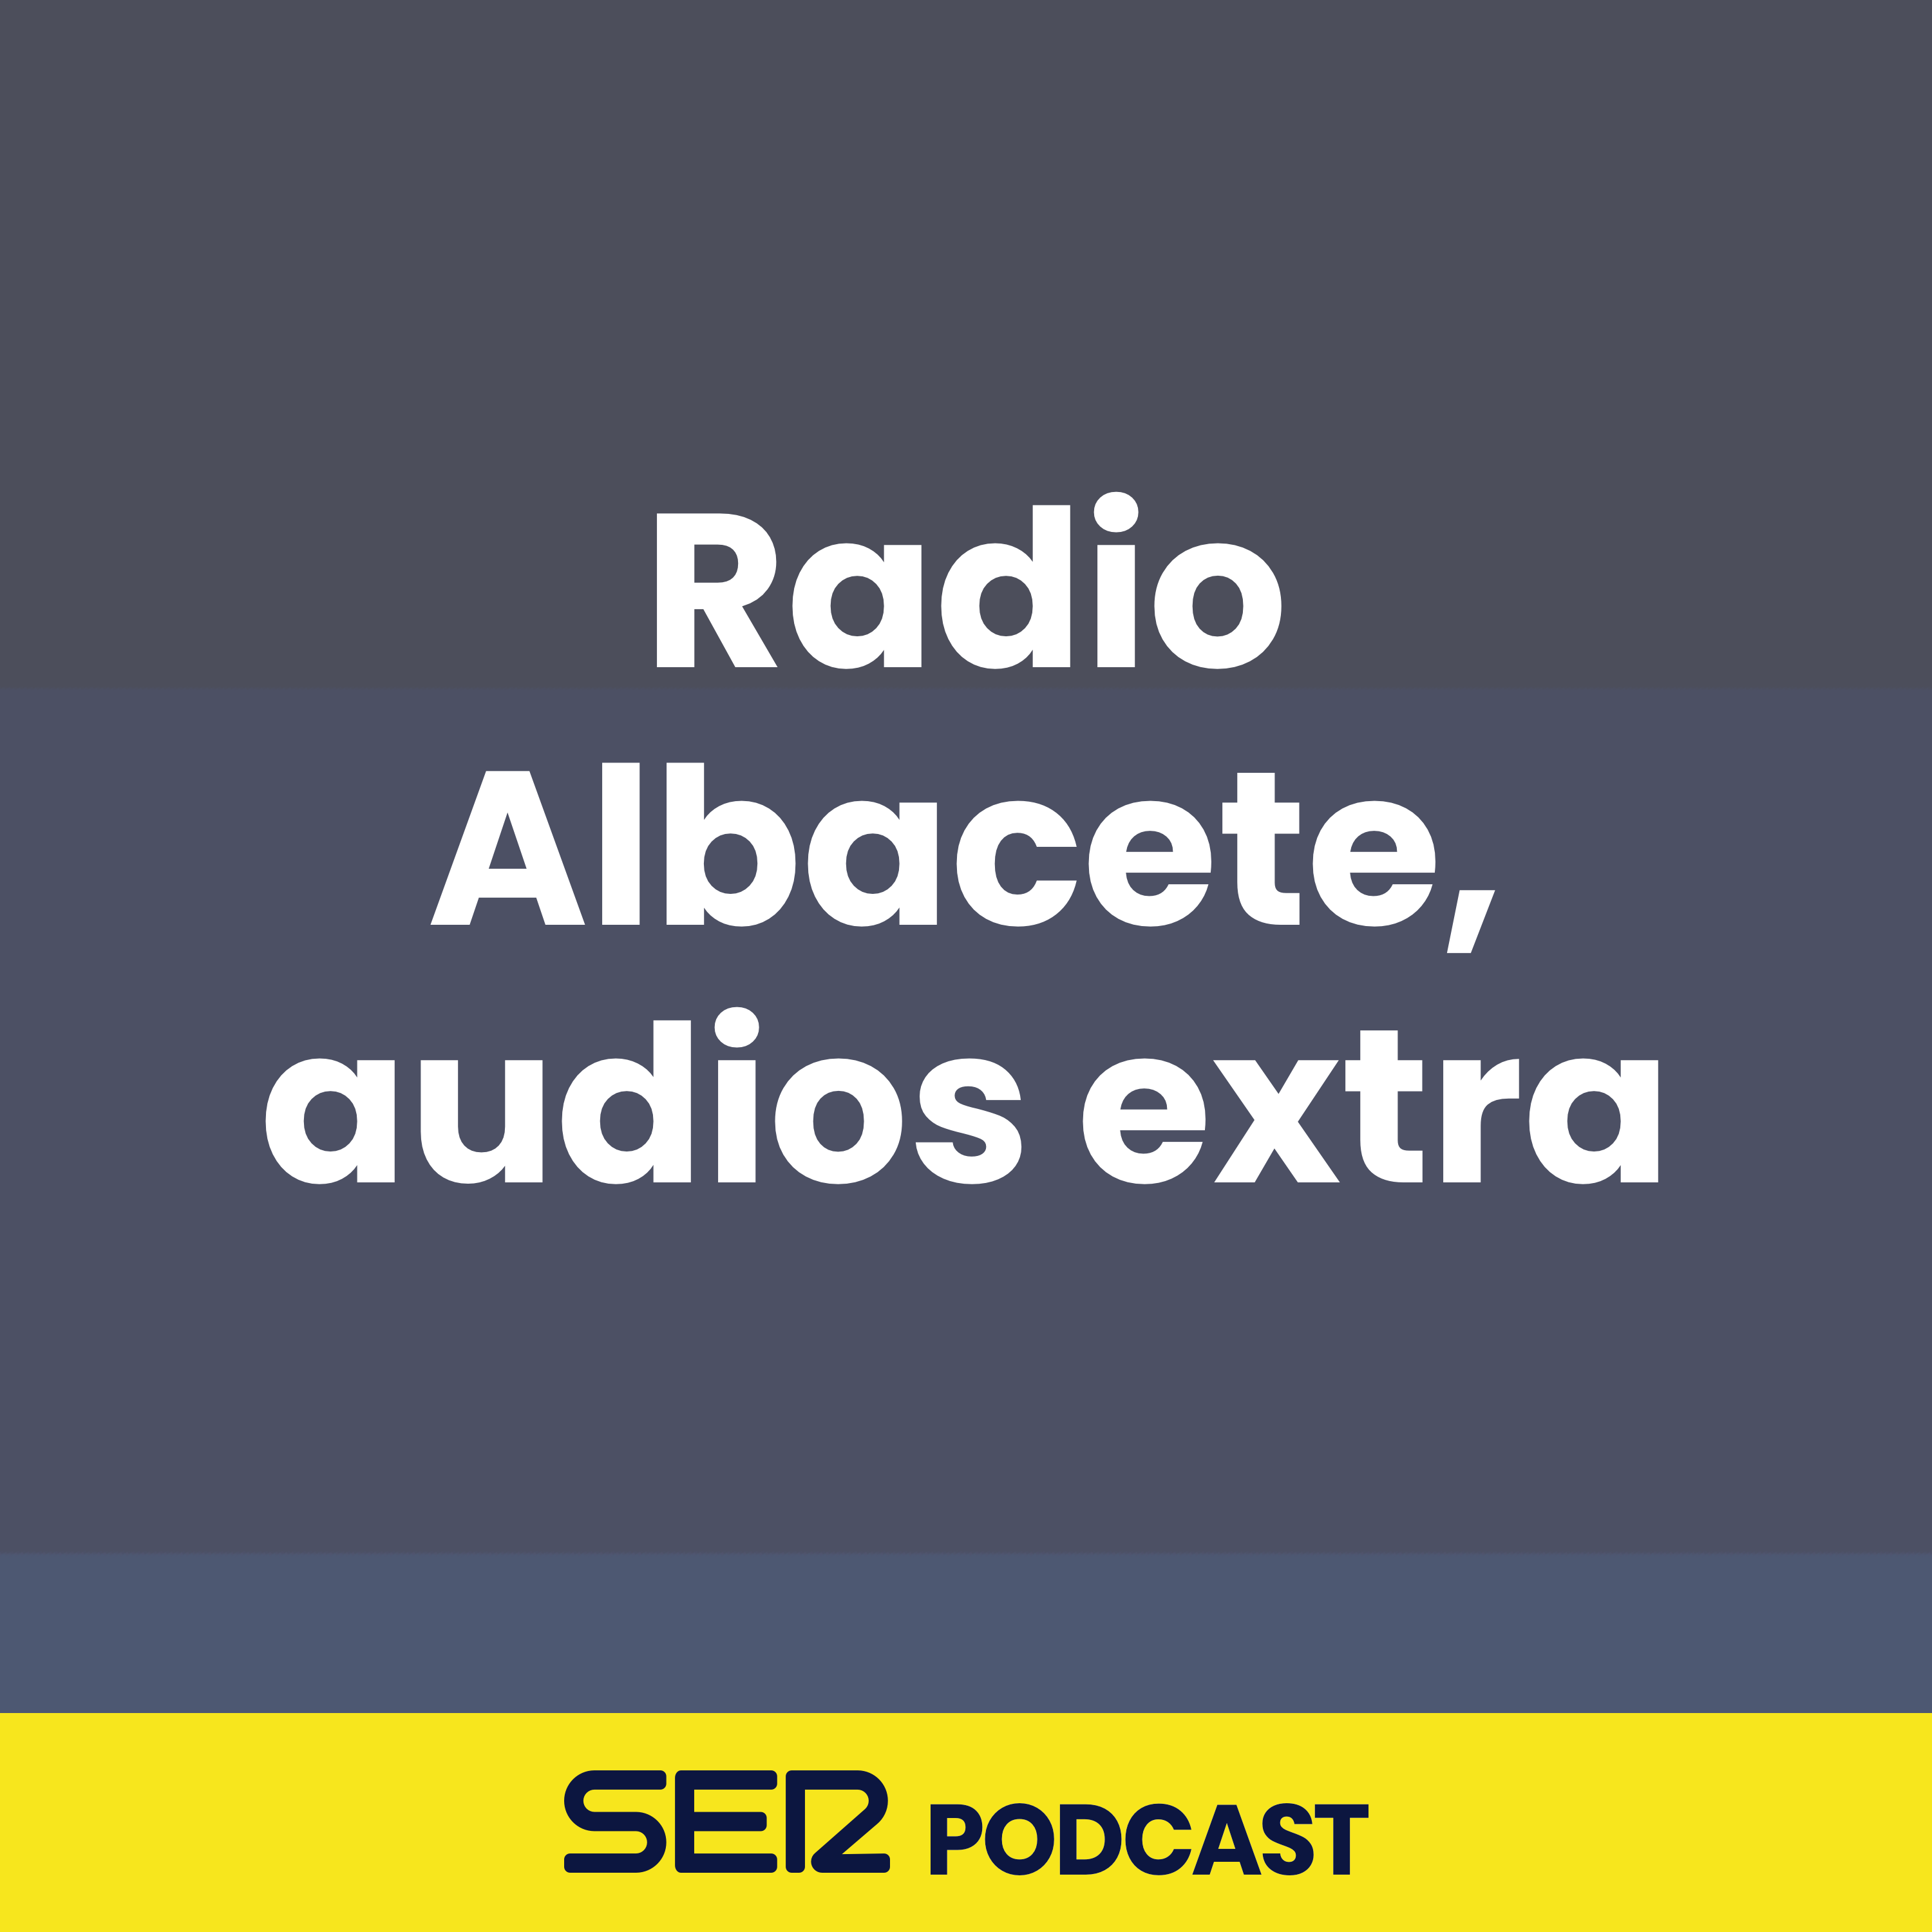 Radio Albacete, audios extra